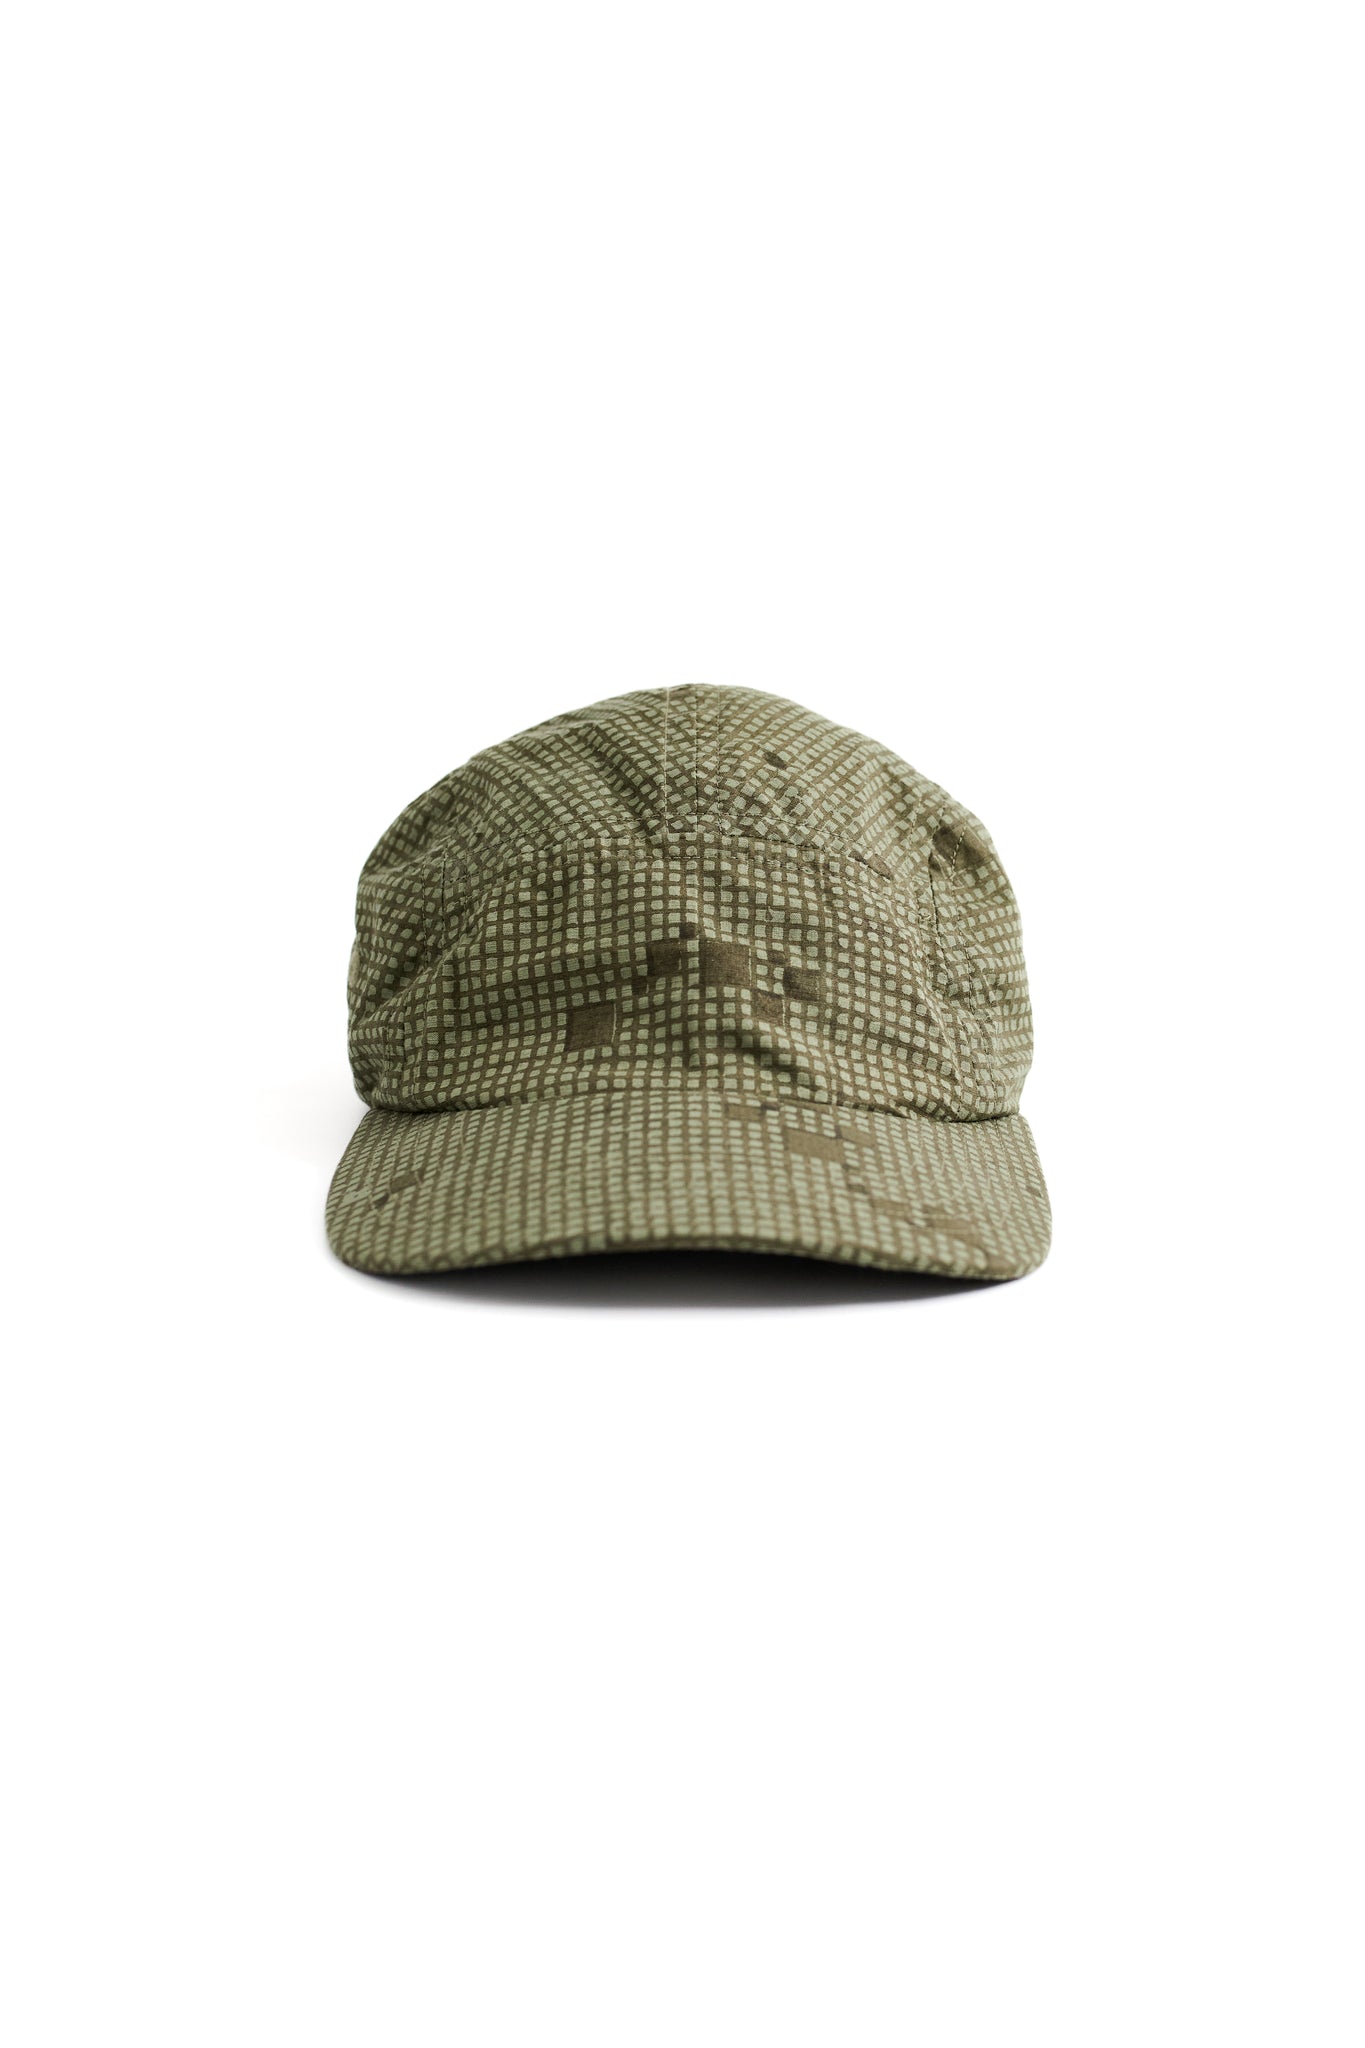 CINCH BACK CAMP HAT - ARMY